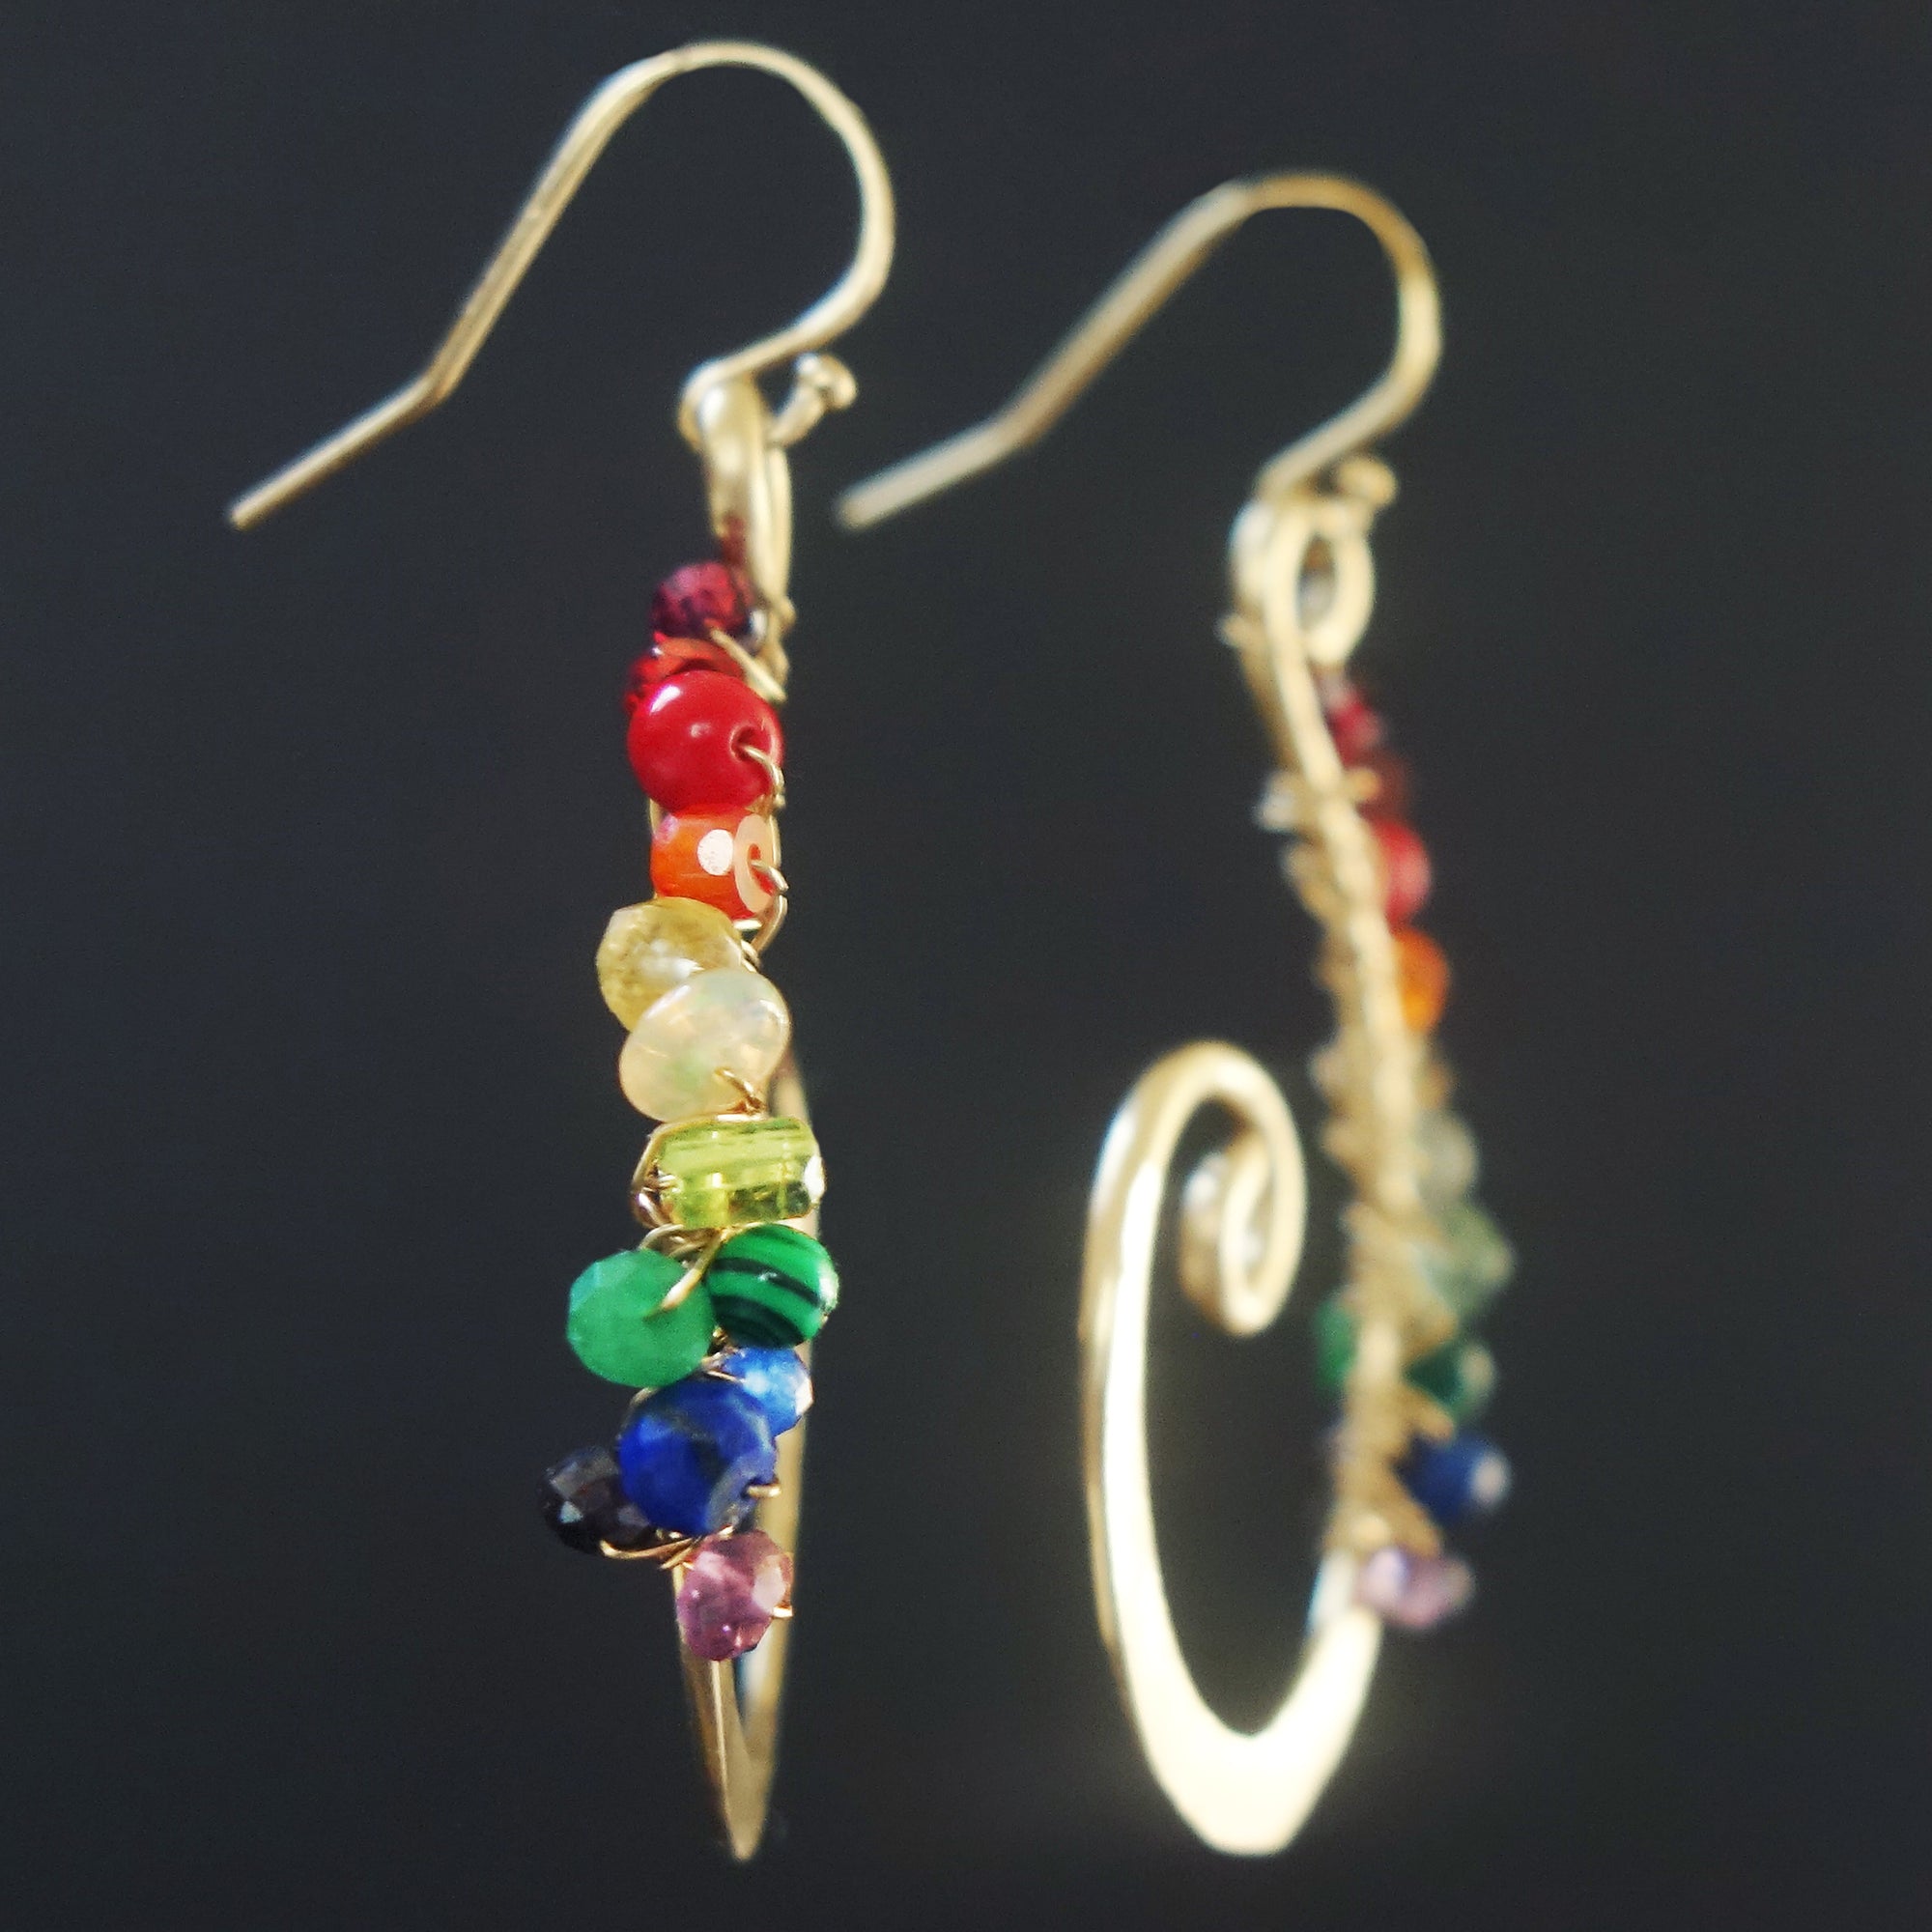 Puffin-inspired Glass Bead Earrings, Nature Love Handwoven Earrings, Dangly  Red Black White Bird Seed Bead Earrings, UK Designed & Handmade - Etsy